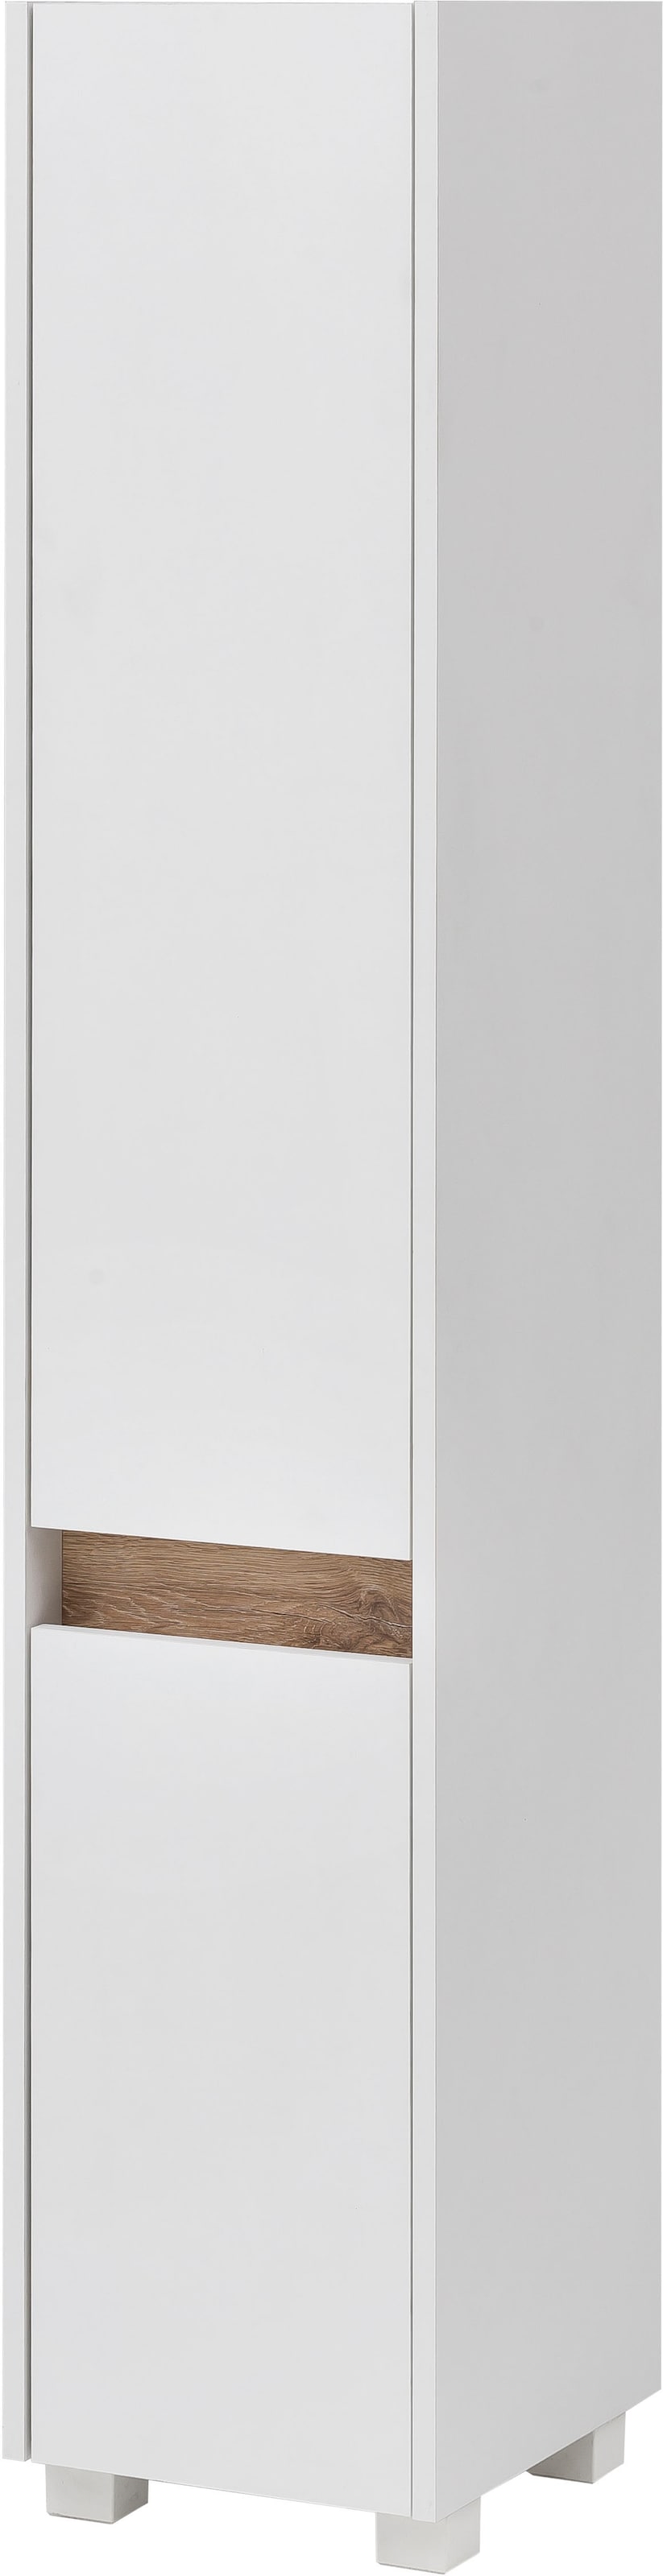 Schildmeyer Hochschrank »Cosmo«, Höhe 164,5 cm, Badezimmerschrank, Blende im modernen Wildeiche-Look